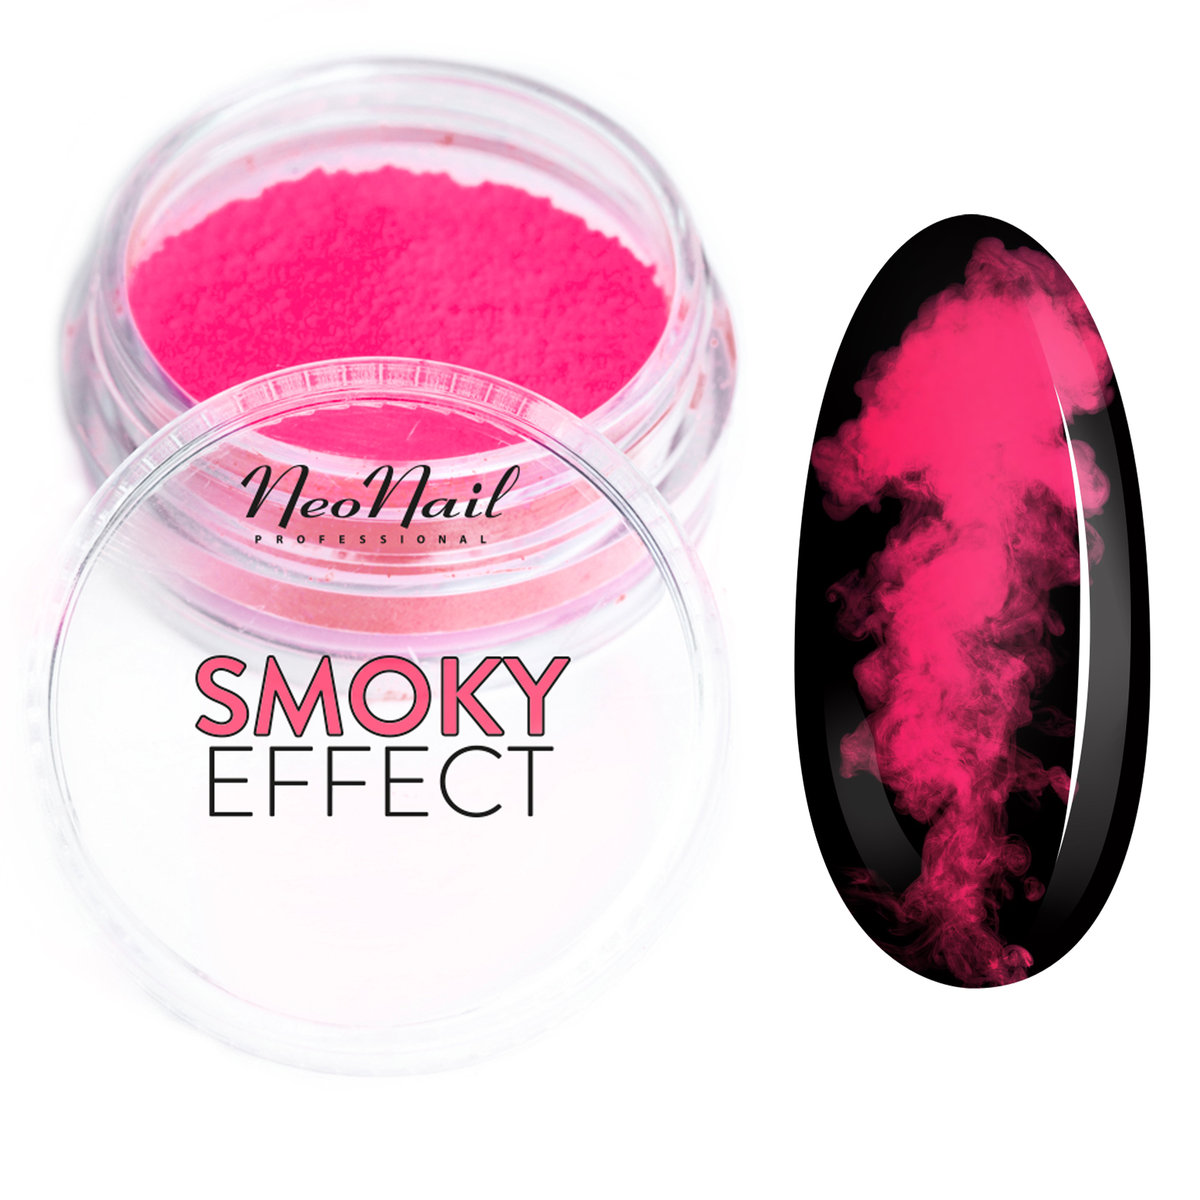 Neonail Smoky Effect - Neonowy pyłek do paznokci - 05 NEOEPPA-01-01-DOPA-03